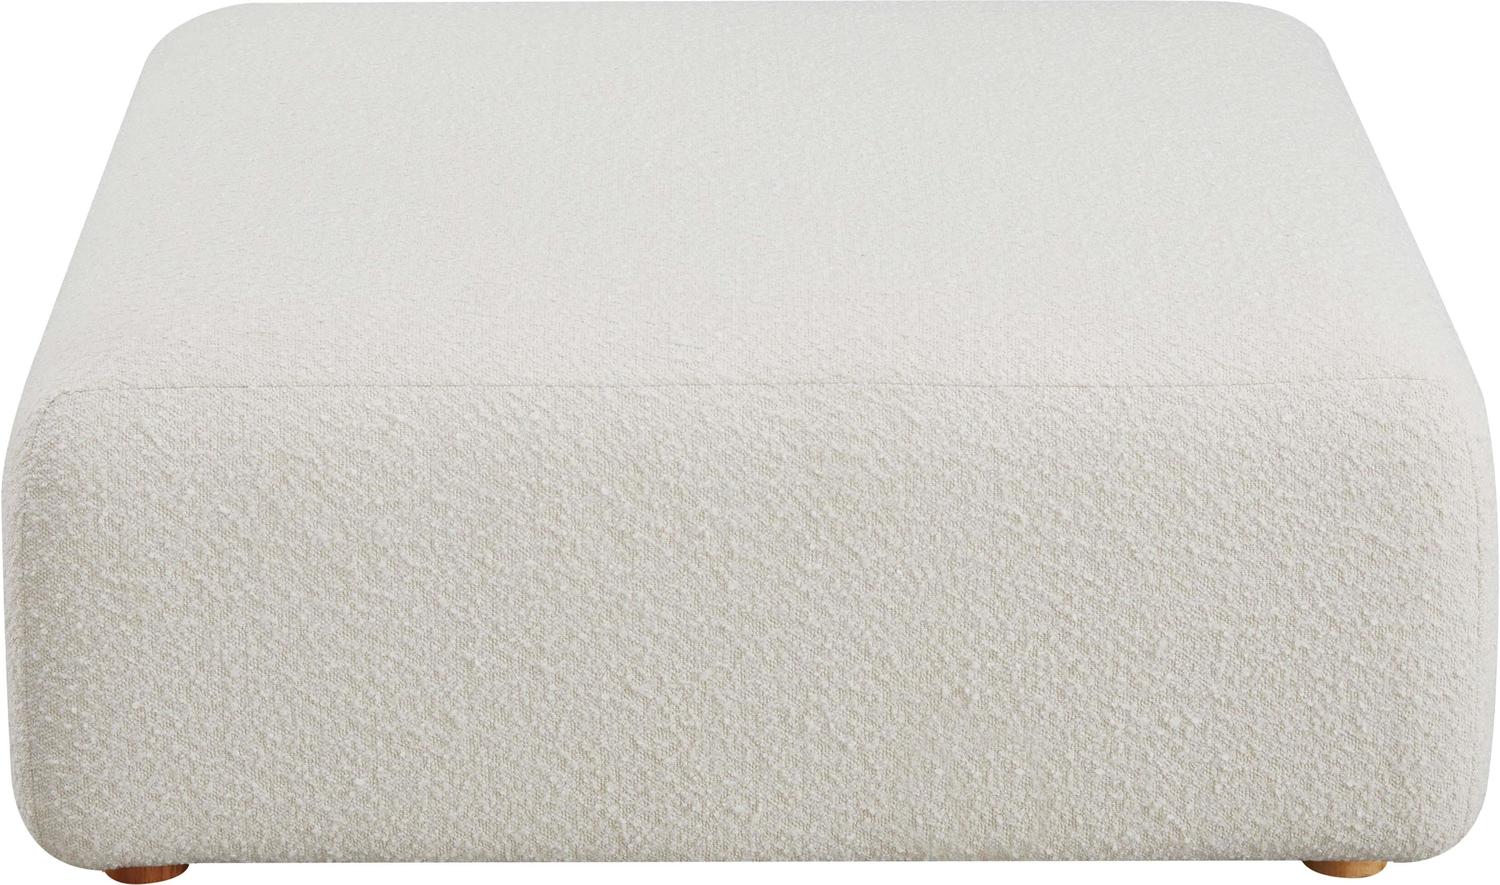 ottoman seat grey Contemporary Design Furniture Cream